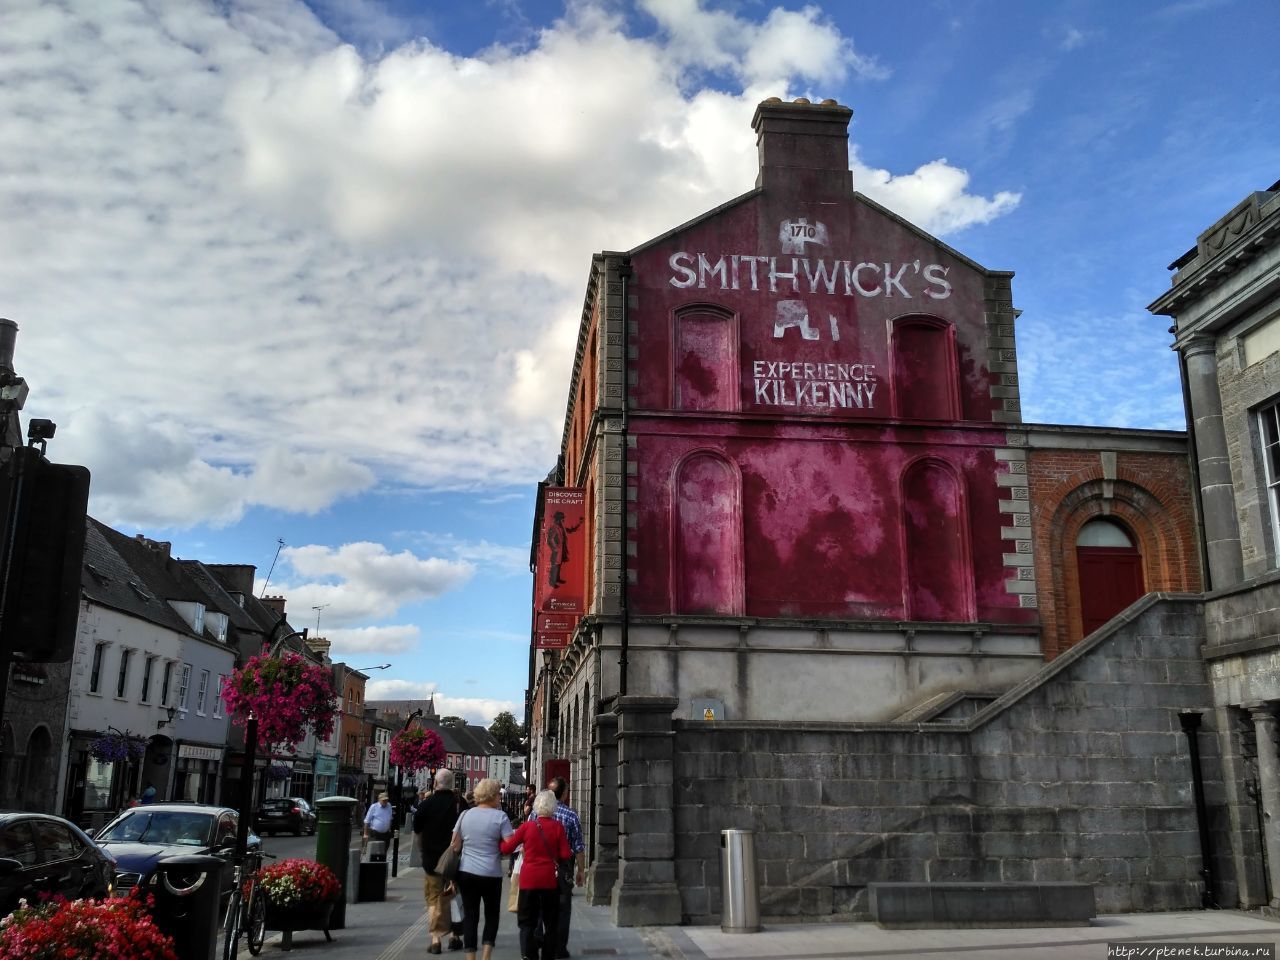 Пивоварня Smithwick's в Kilkenny / Smithwick's Experience Kilkenny